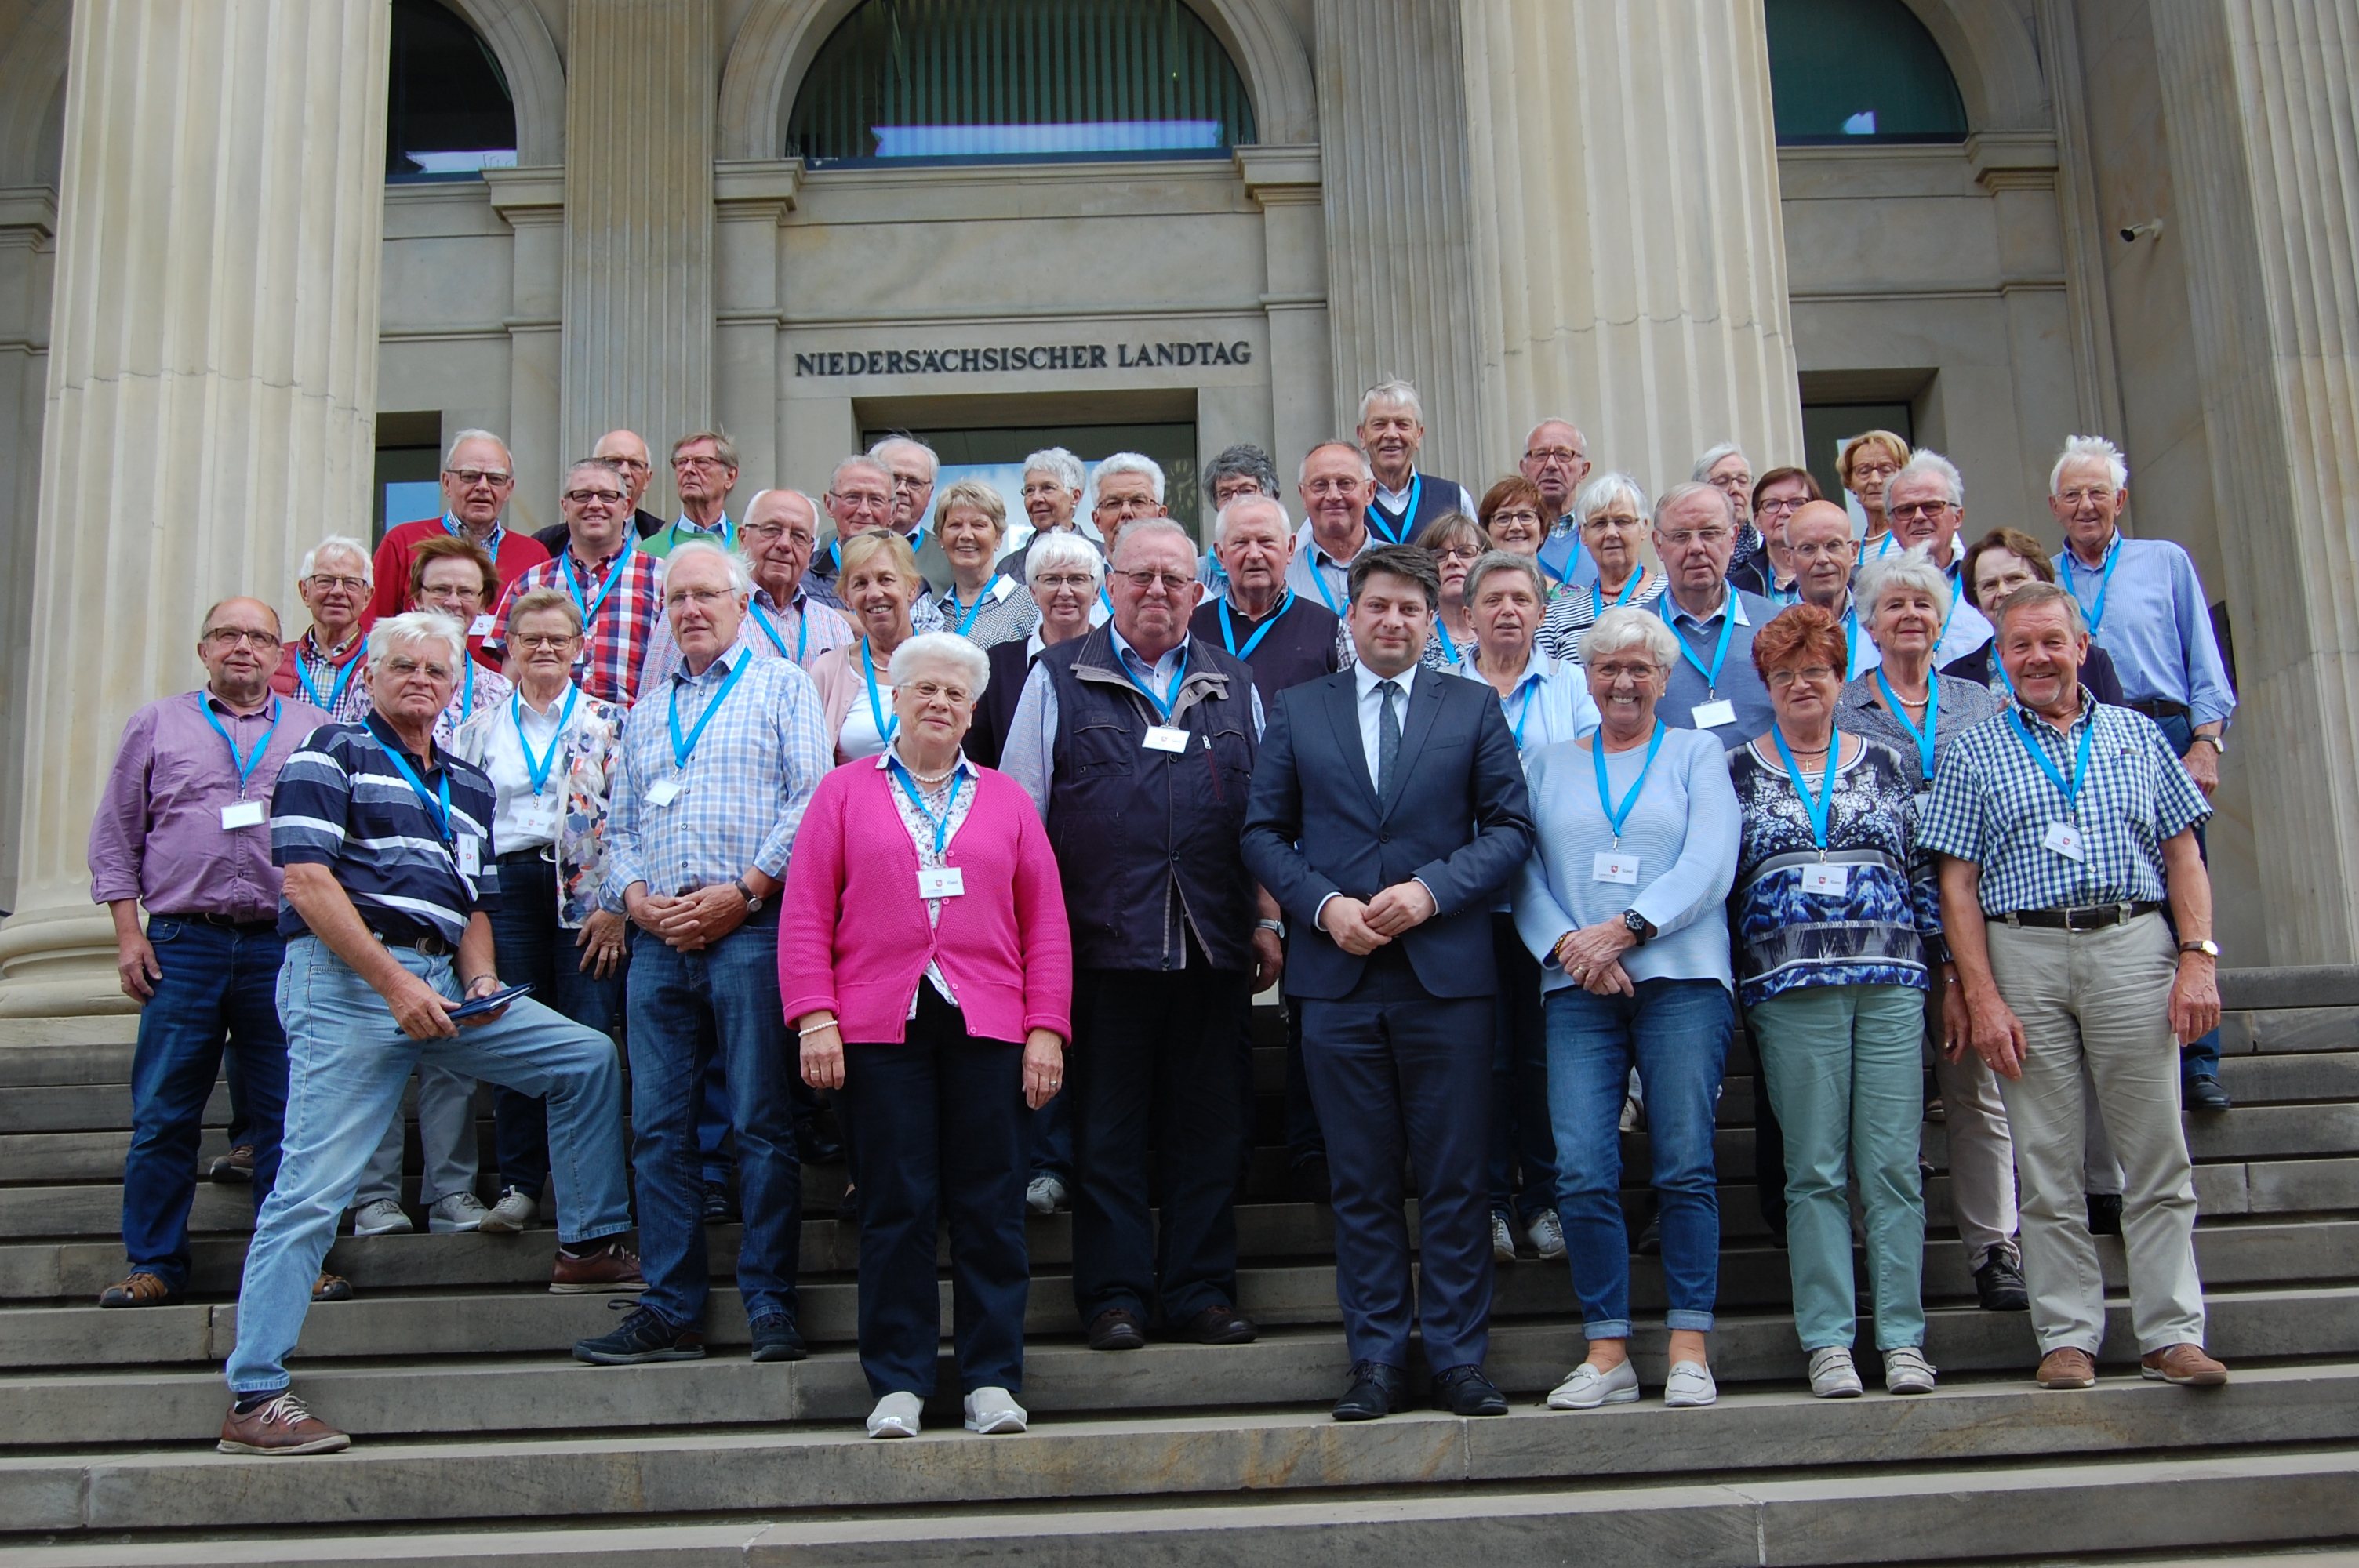 50 Kolpingschwestern und Kolpingbrüder besuchten auf Einladung des Landtagsabgeordneten und Kolpingbruders Christian Calderone die Landeshauptstadt Hannover.